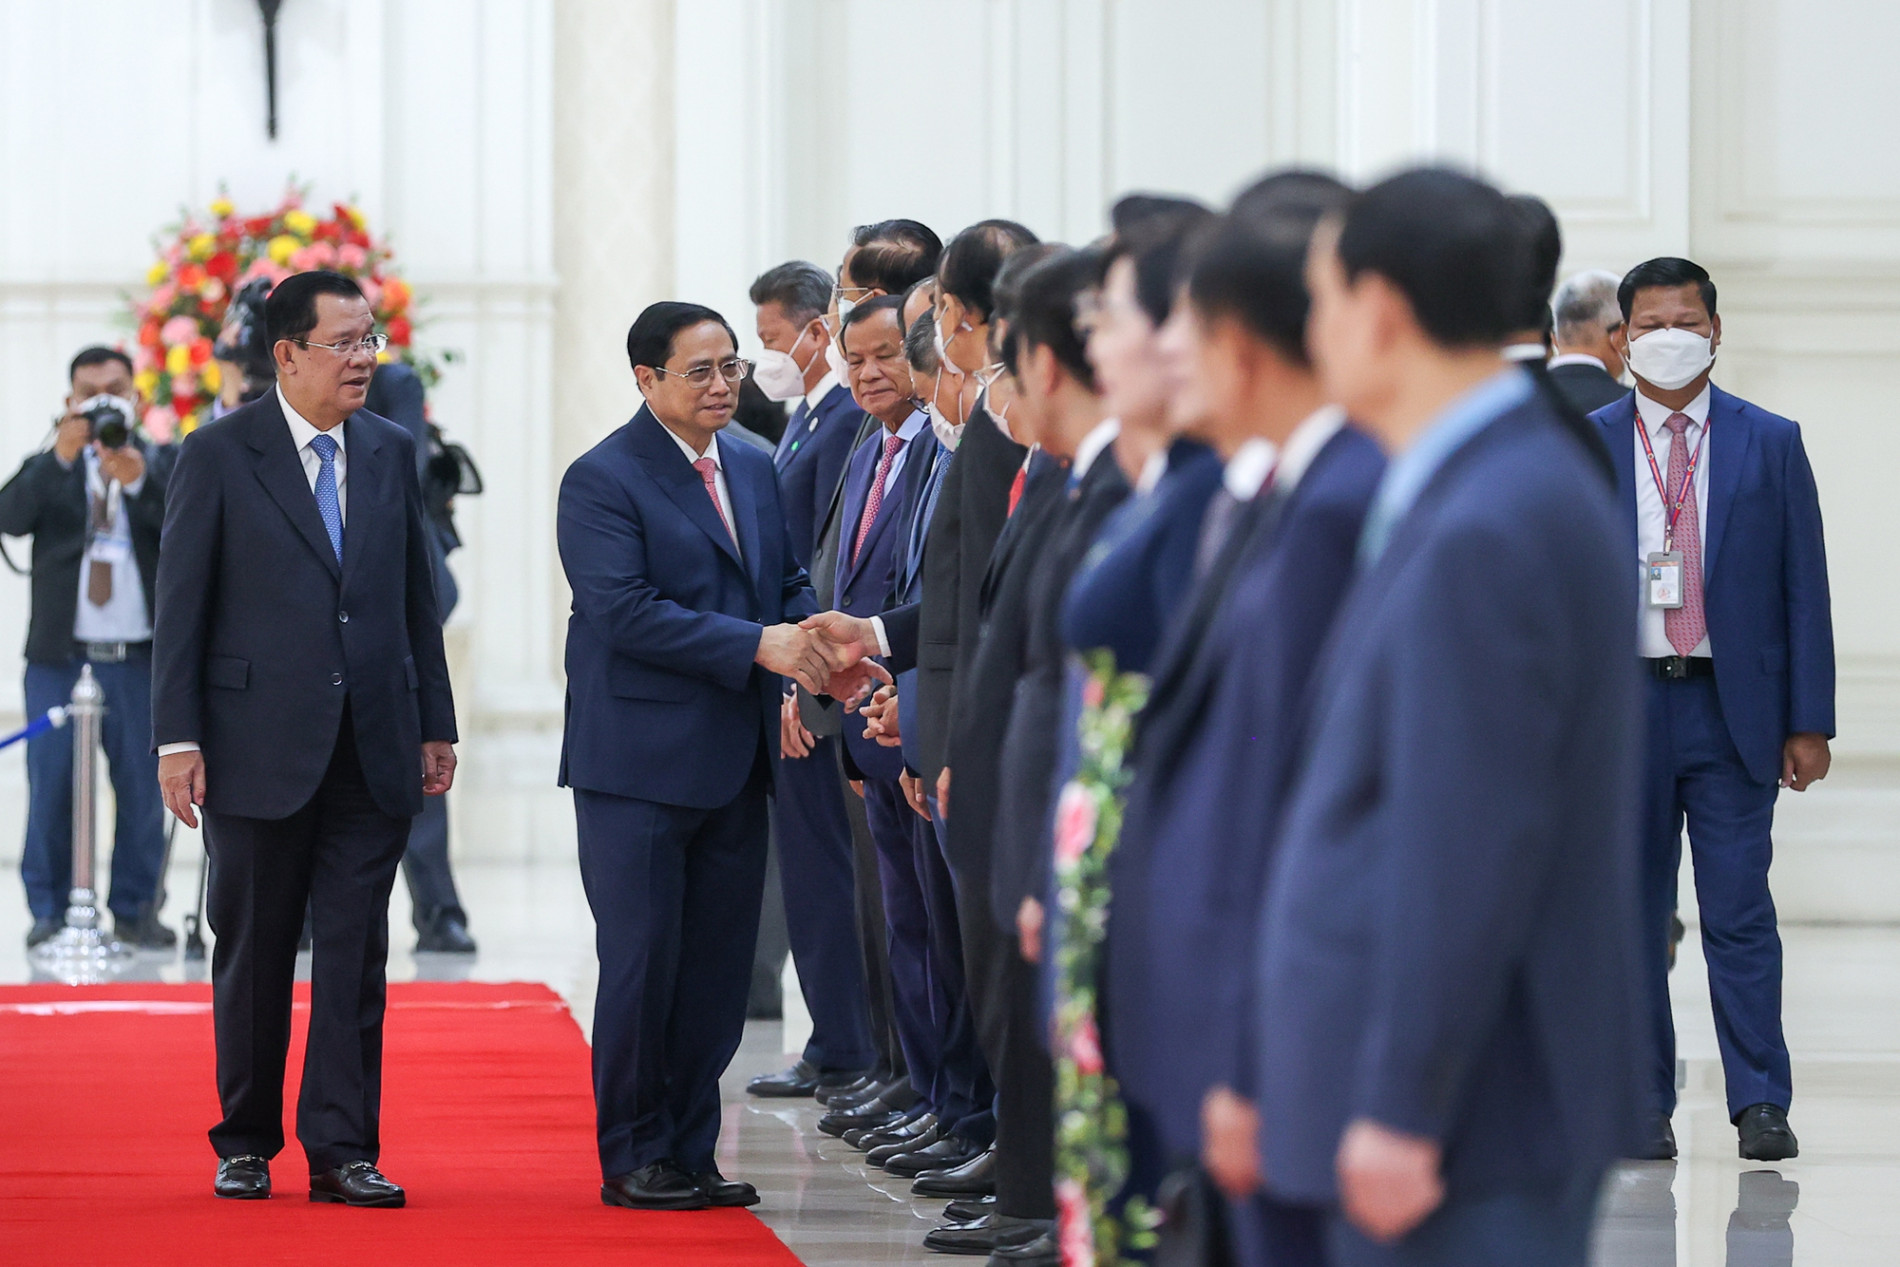 Chùm ảnh: Lễ đón chính thức Thủ tướng Phạm Minh Chính thăm Campuchia - Ảnh 5.